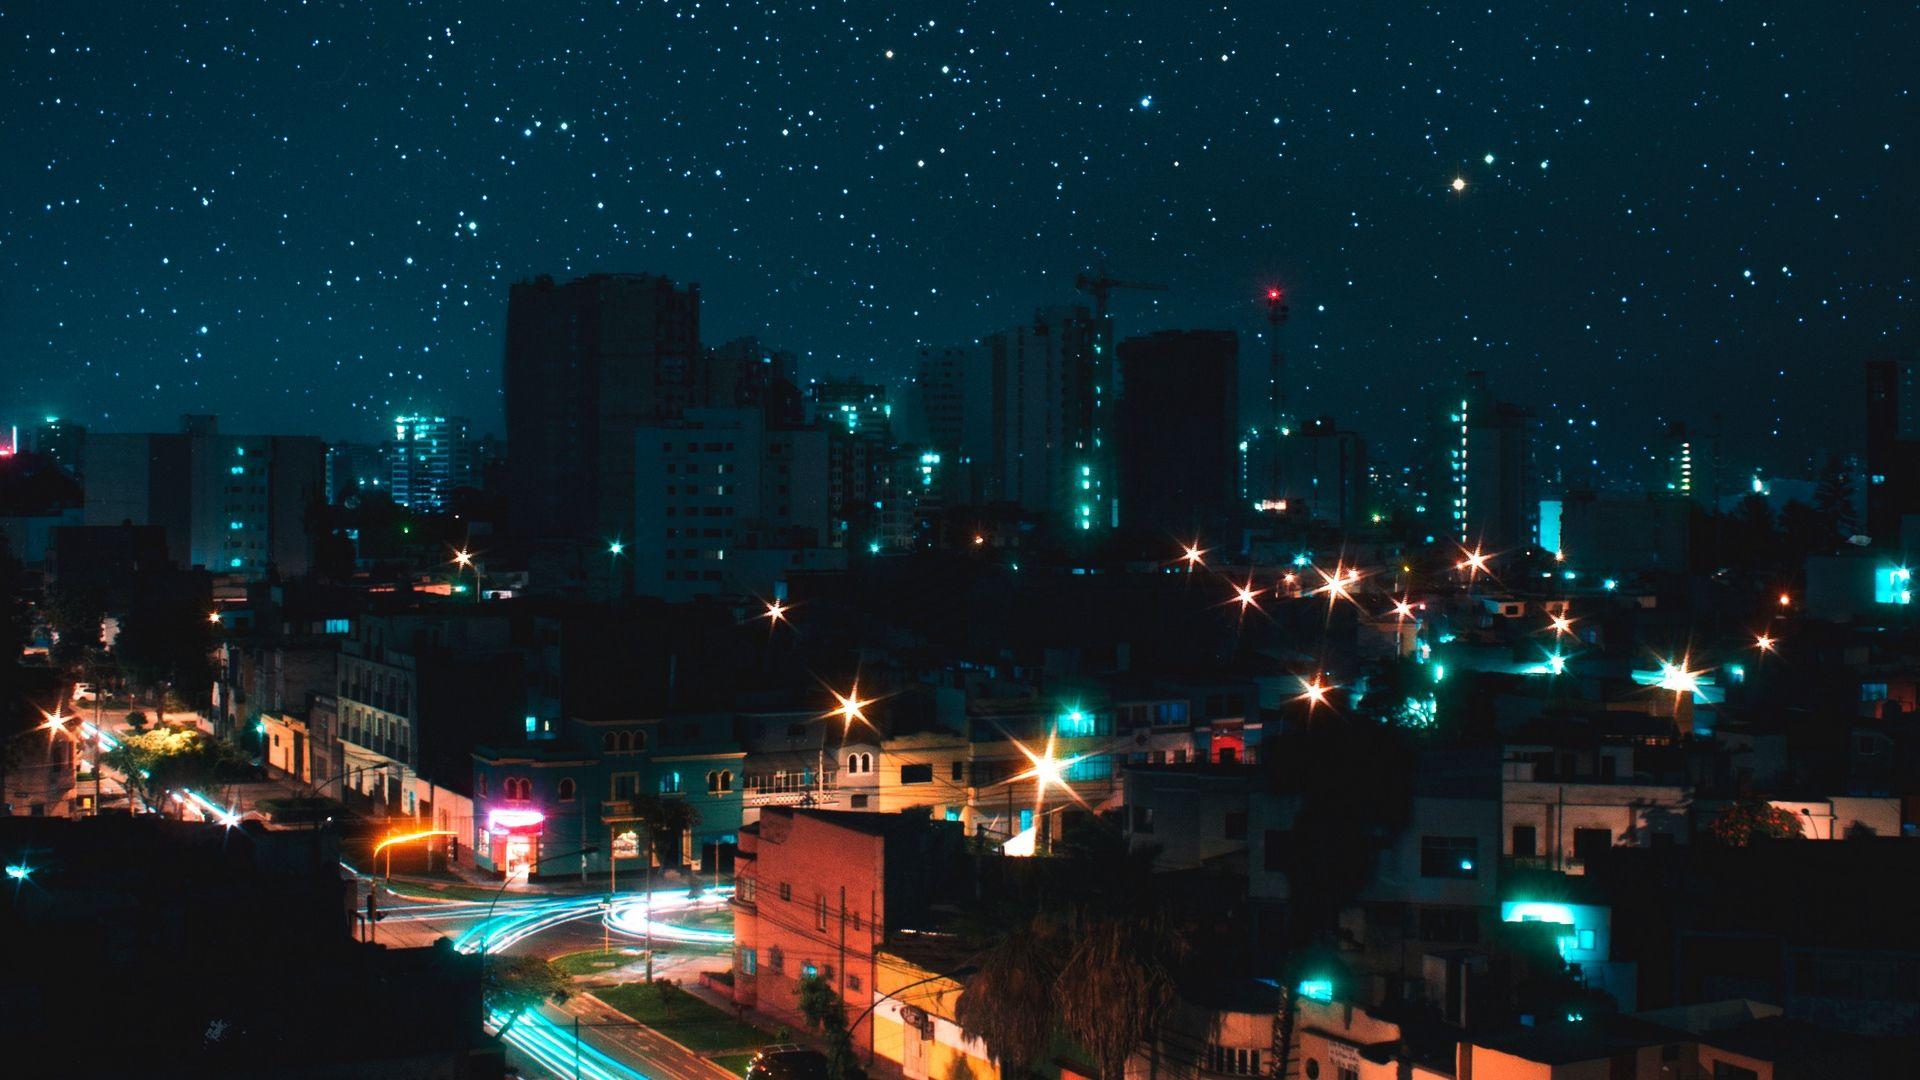 Thành phố đêm với khung cảnh trời đầy sao sẽ chắc chắn mang lại cho bạn một trải nghiệm độc đáo và tuyệt vời. Hình ảnh này sẽ cho bạn cảm giác như đang ngẩn ngơ trước vô số những tòa nhà sáng lấp lánh trên con đường phố với bầu trời rực rỡ. Hãy khám phá cho mình khoảnh khắc đó ngay bây giờ!